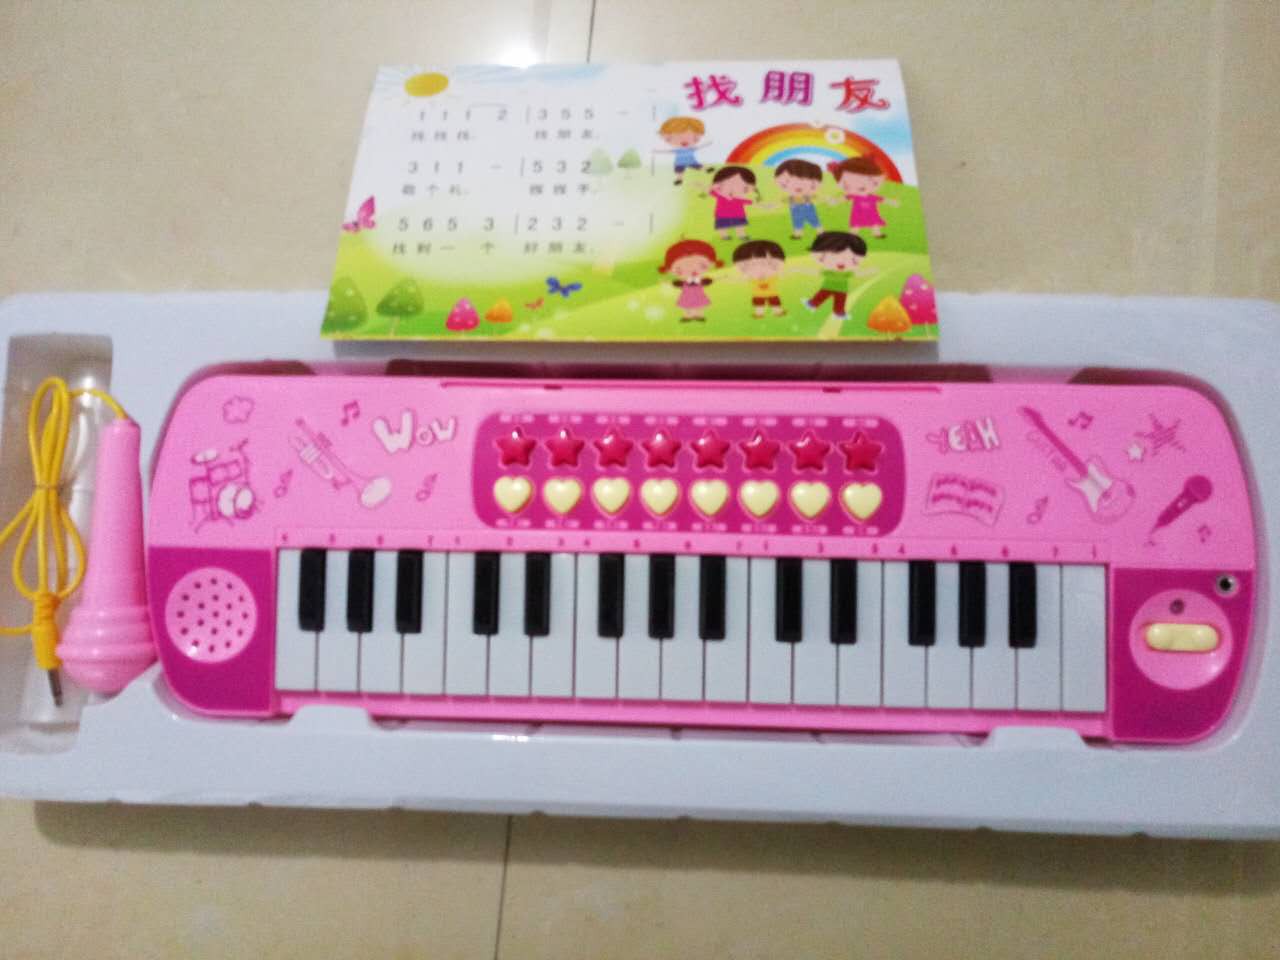 Đàn organ 32 phím, có mic cho bé phát triển năng khiếu âm nhạc của mình 🎹🎹🎹👩‍🎤🧑‍🎤👨‍🎤